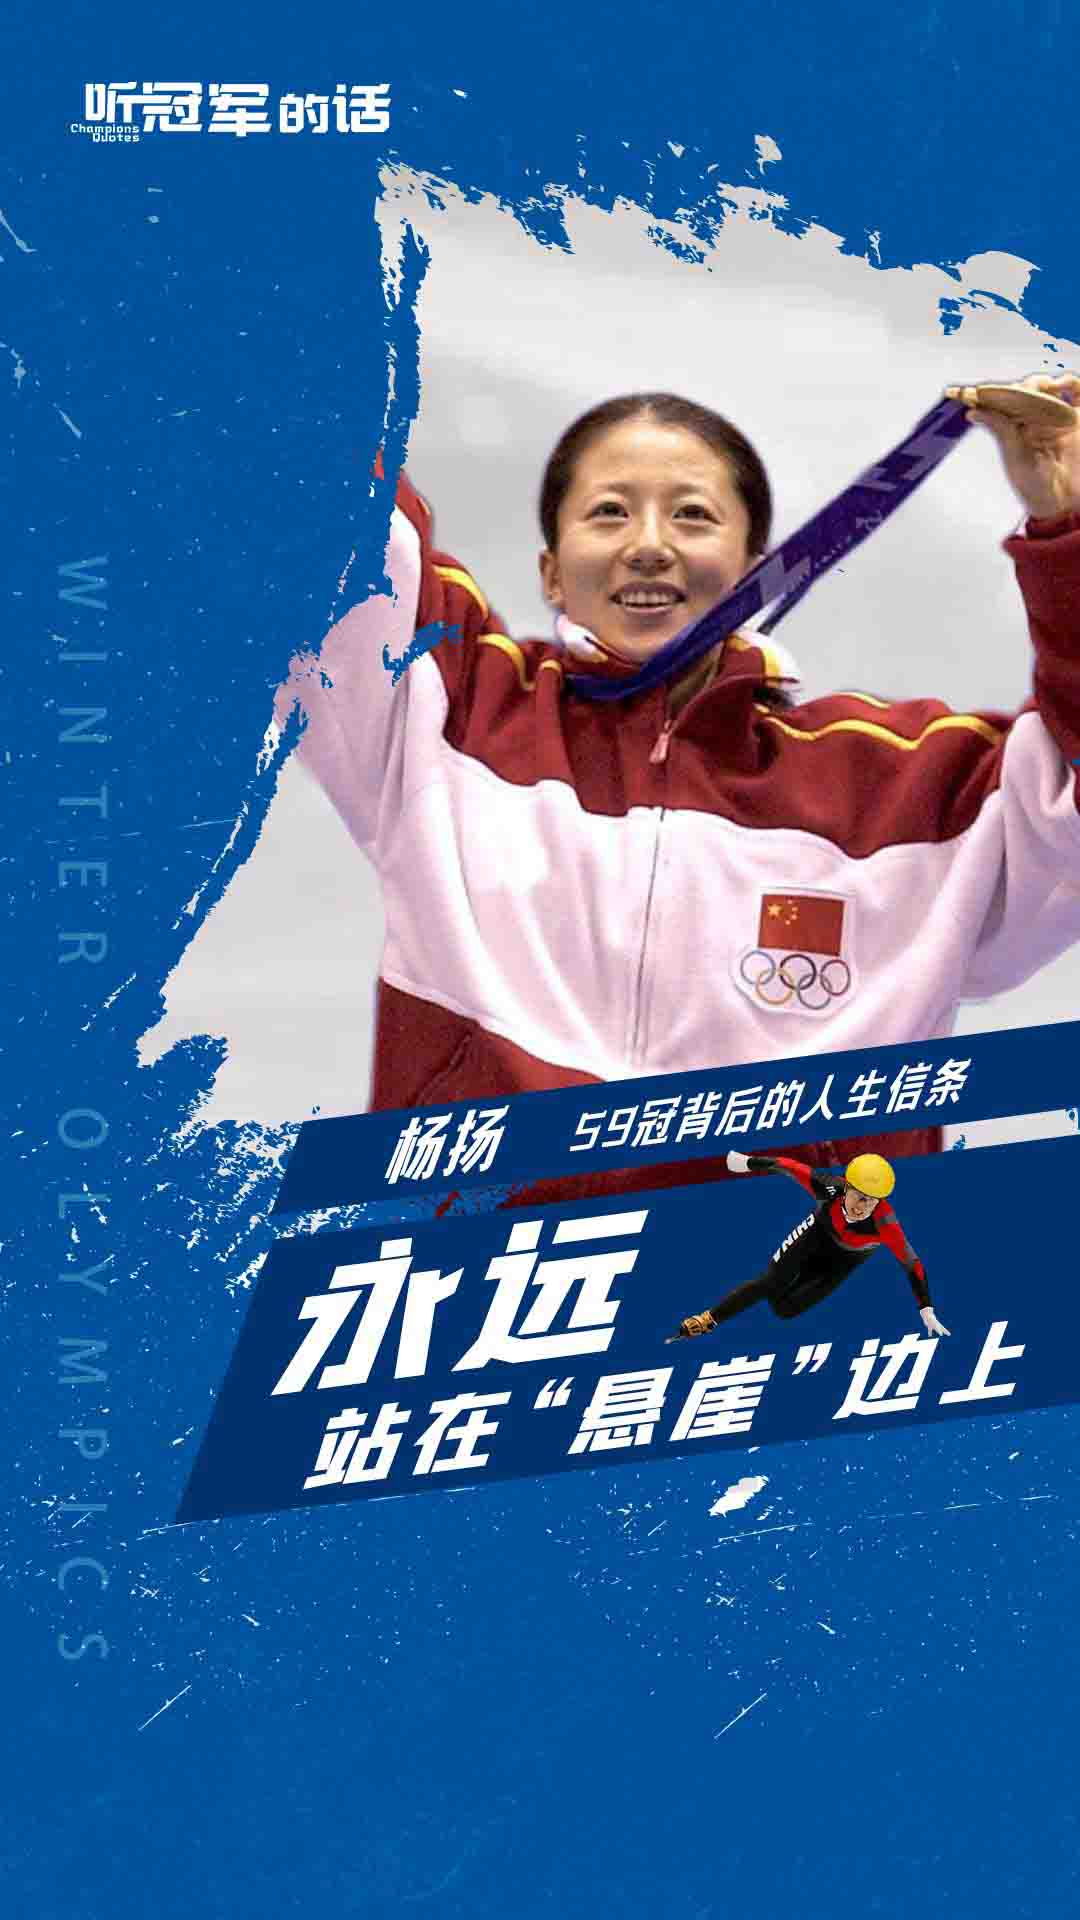 大杨扬冬奥会冠军图片图片